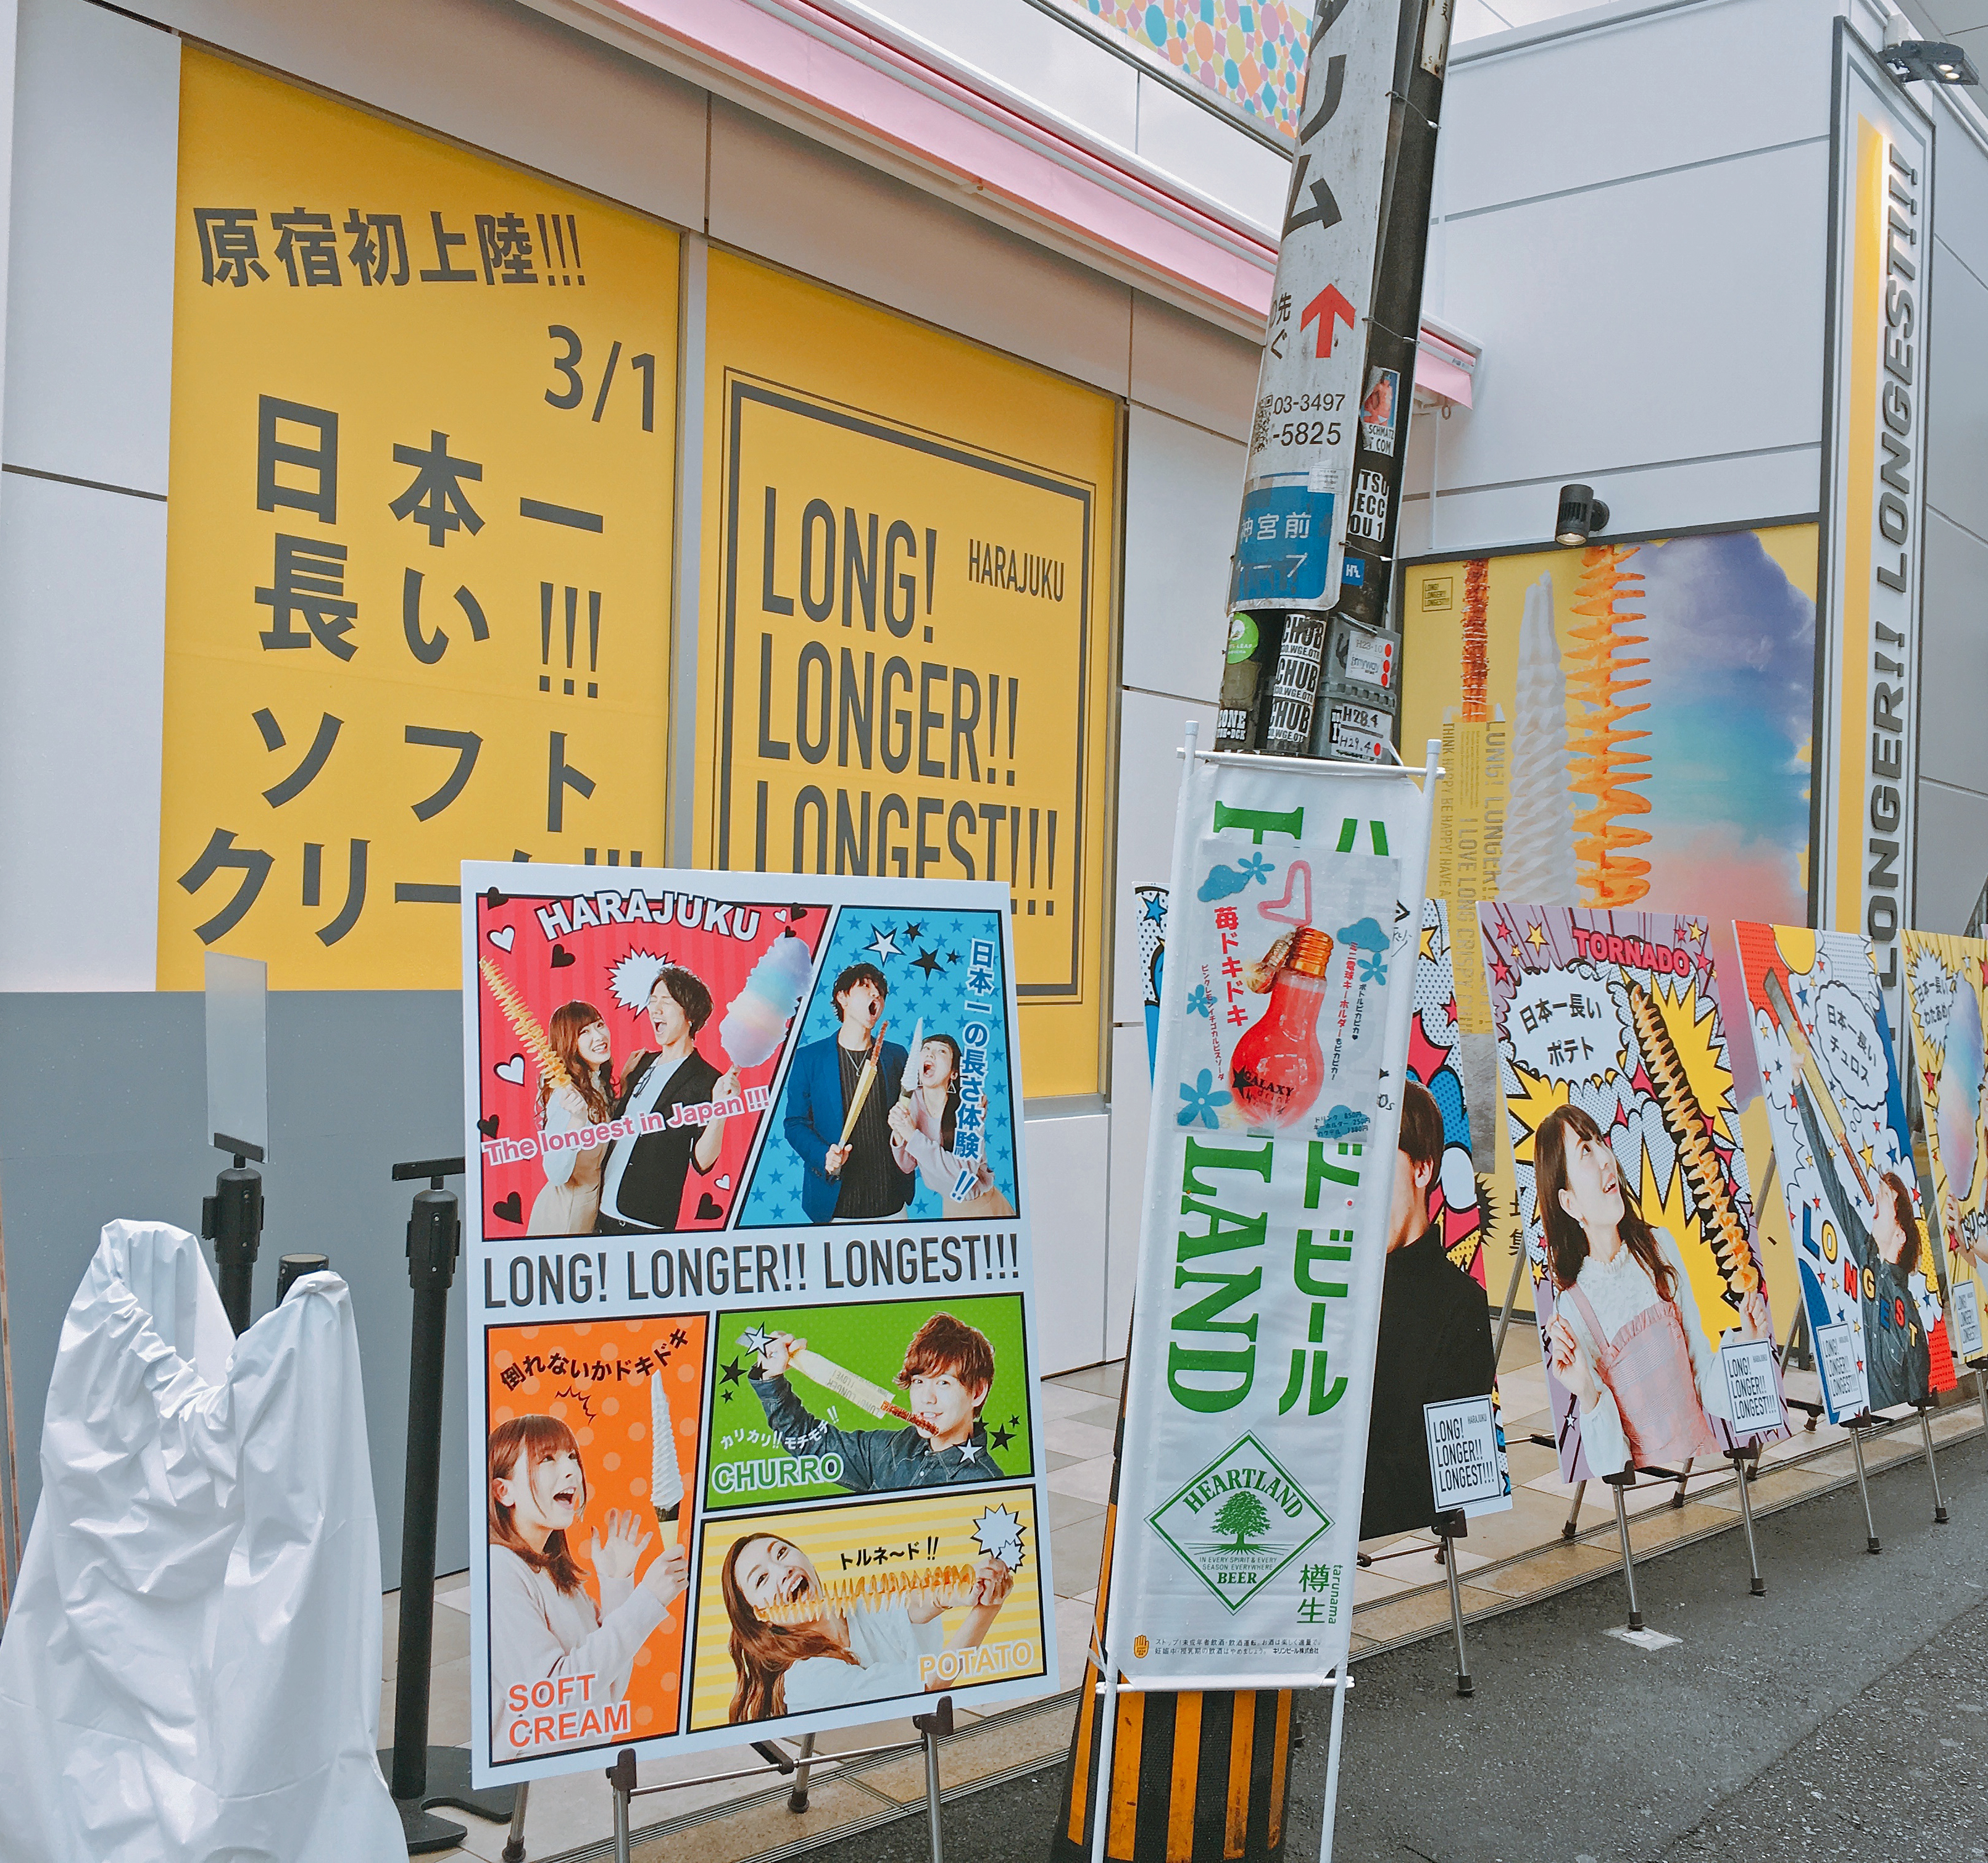 インスタ女子注目 日本一長いソフトクリームを提供するお店が東京 原宿にオープン マジでなげぇえええええええええッ ロケットニュース24